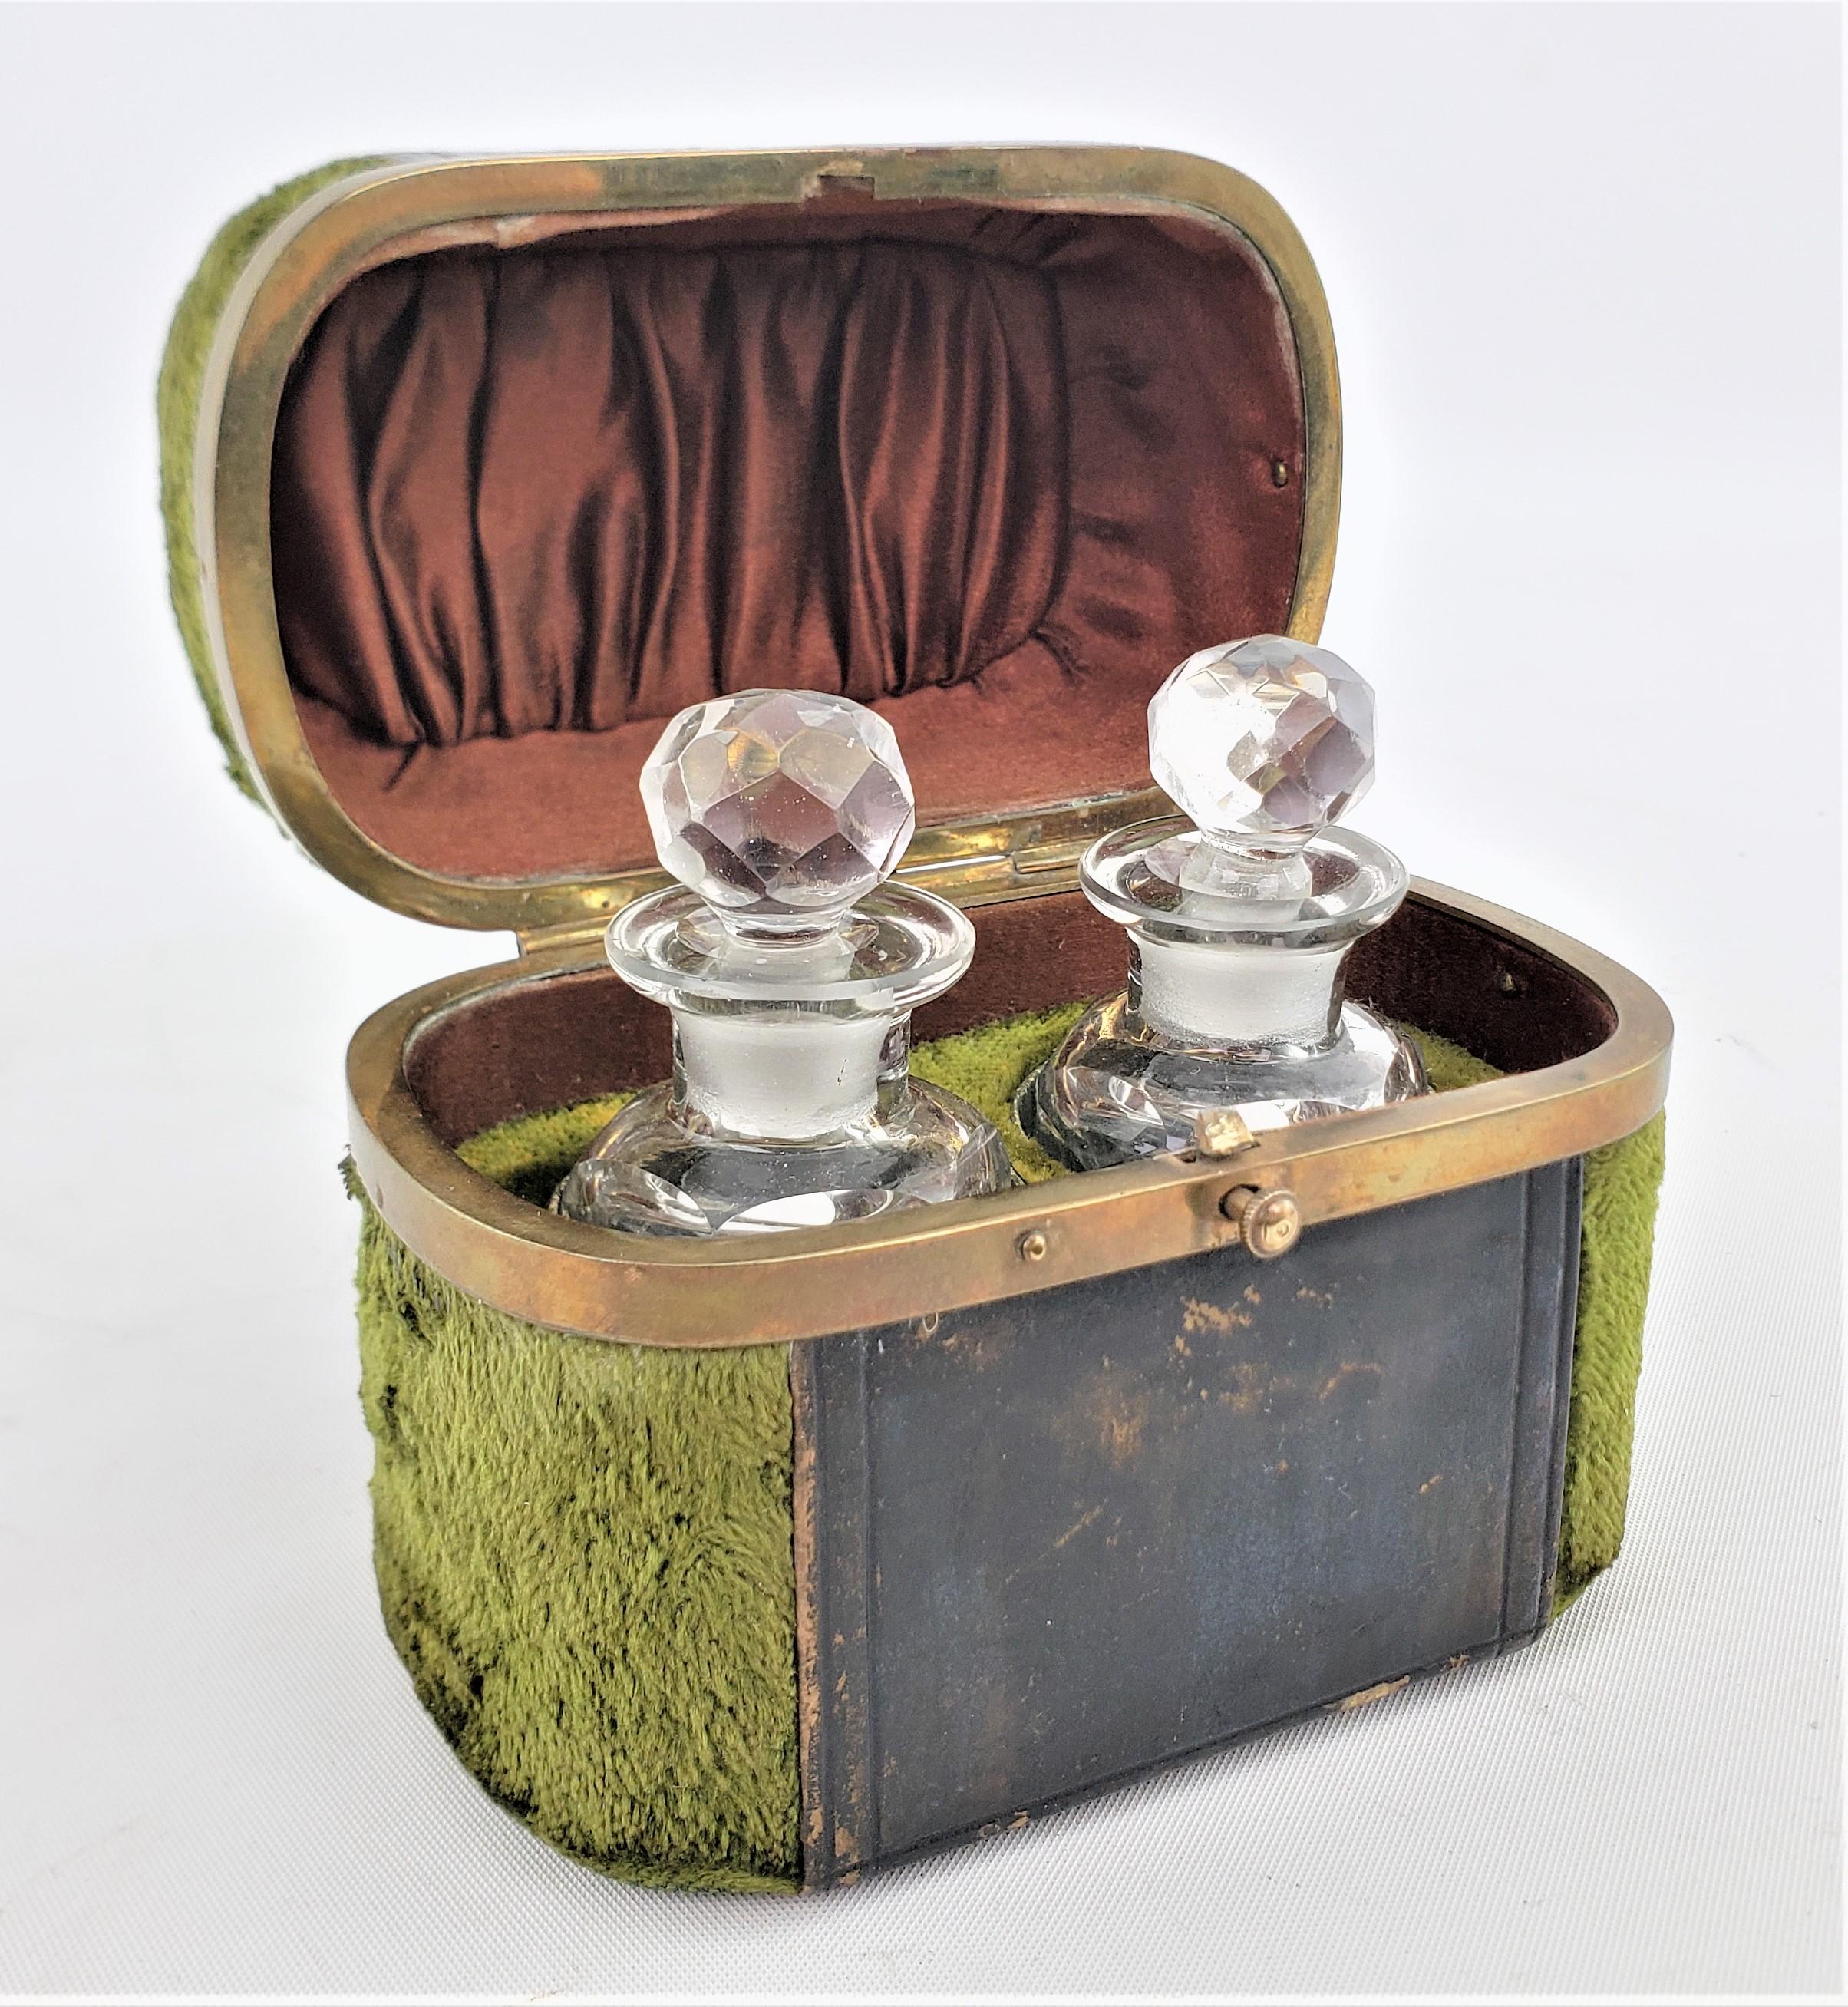 Dieser antike Satz gläserner Parfüm- oder Duftflaschen mit einem passenden Etui ist unsigniert, stammt aber vermutlich aus Frankreich und wurde um 1880 im Stil Louis XVI hergestellt. Die Flaschen bestehen aus klarem Glas mit facettierten Korken, die